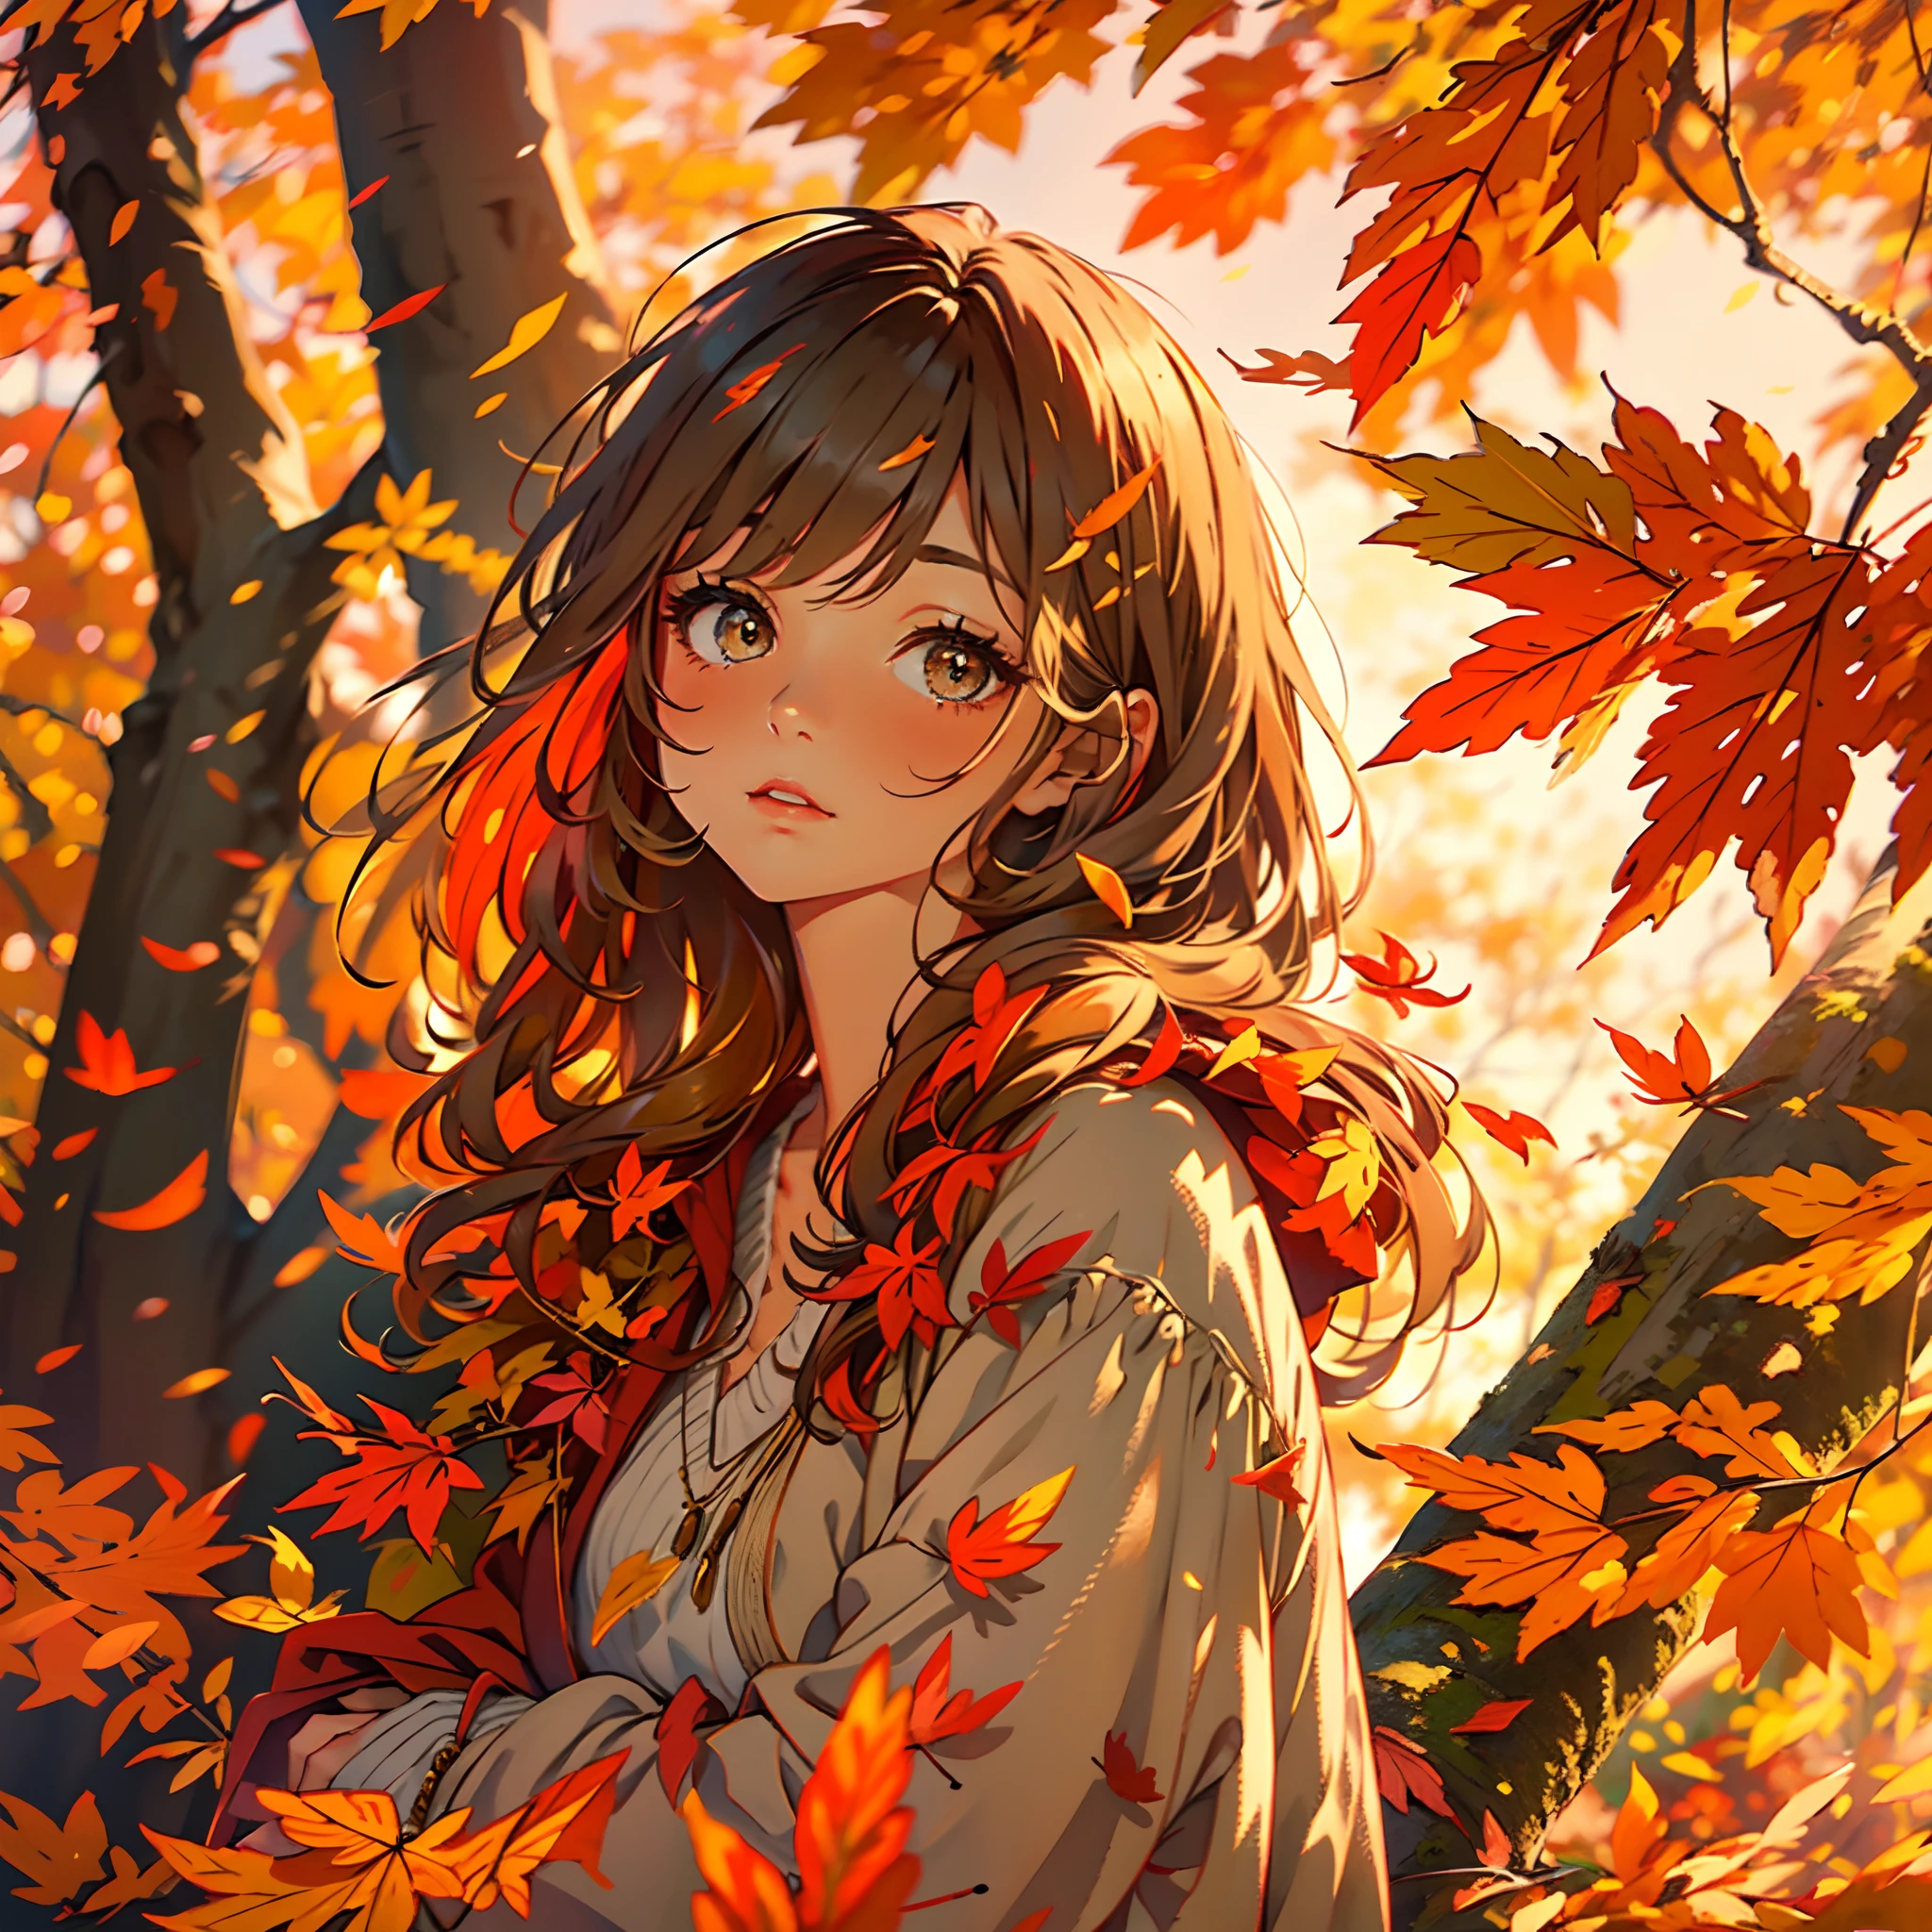 鮮豔的色彩, 落叶, 金色的陽光, 舒适的氛围, 充满活力的红色和橙色, 柔和溫暖的色調, 寧靜的環境, 微風, 懷舊的心情, 秋天的樹葉, 平靜的表情, 纖細睫毛, 迷人的目光